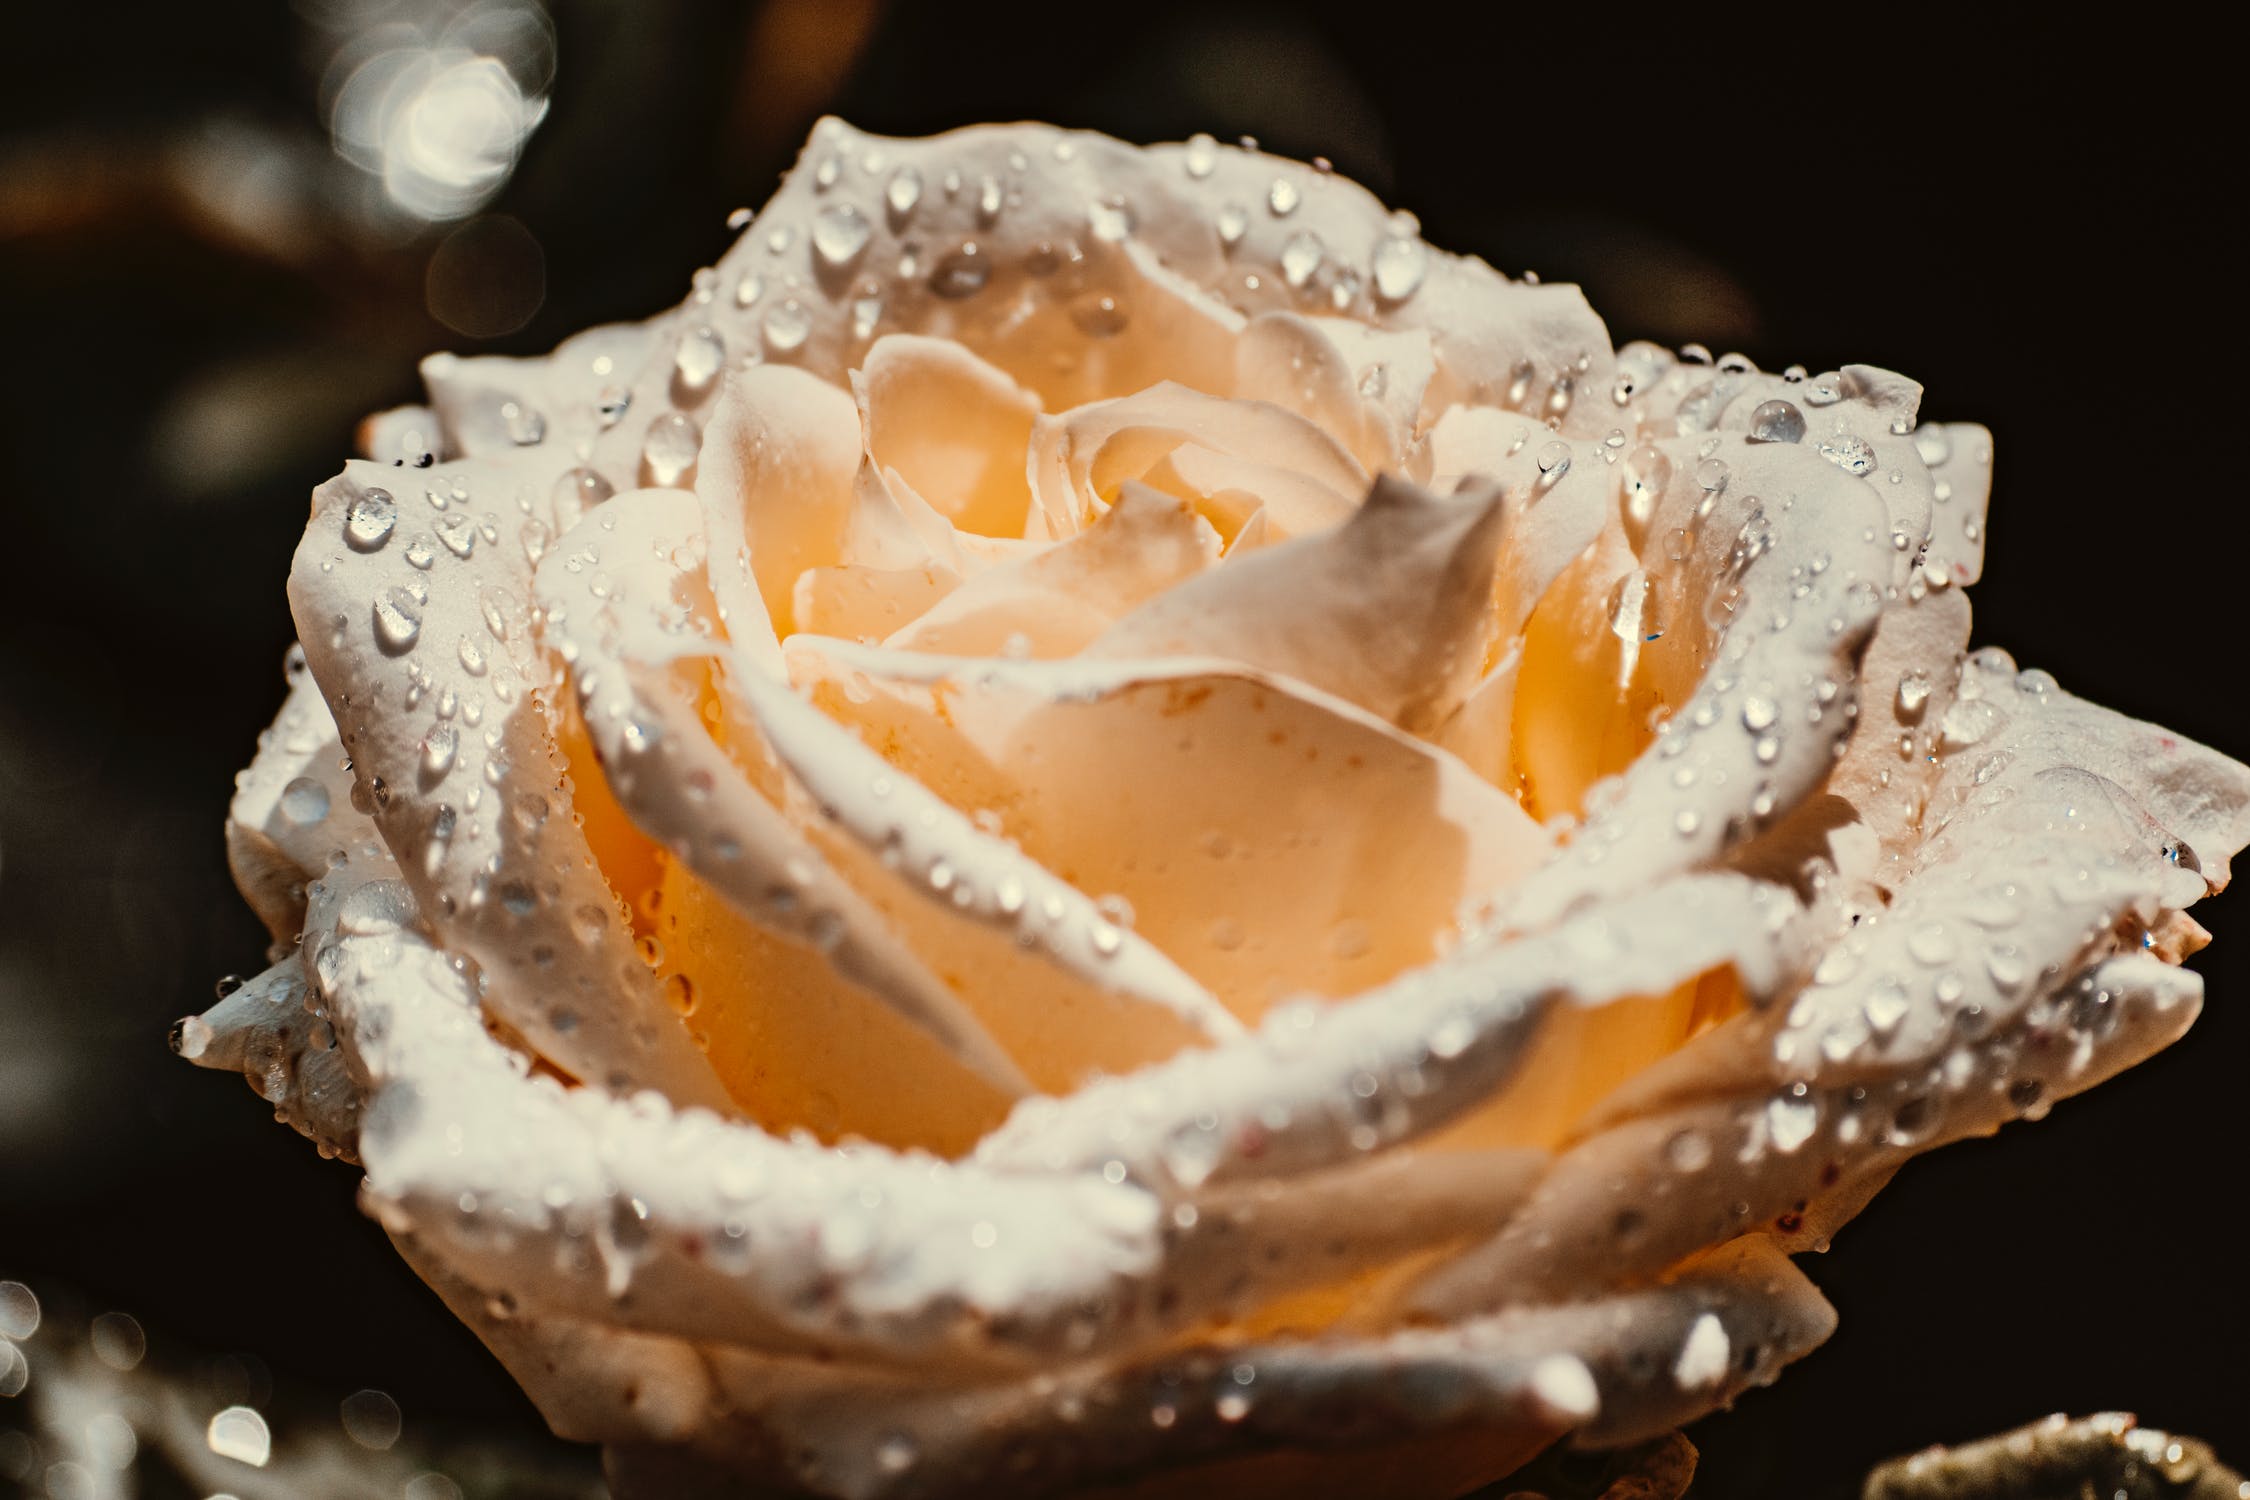 Белая роза в росе